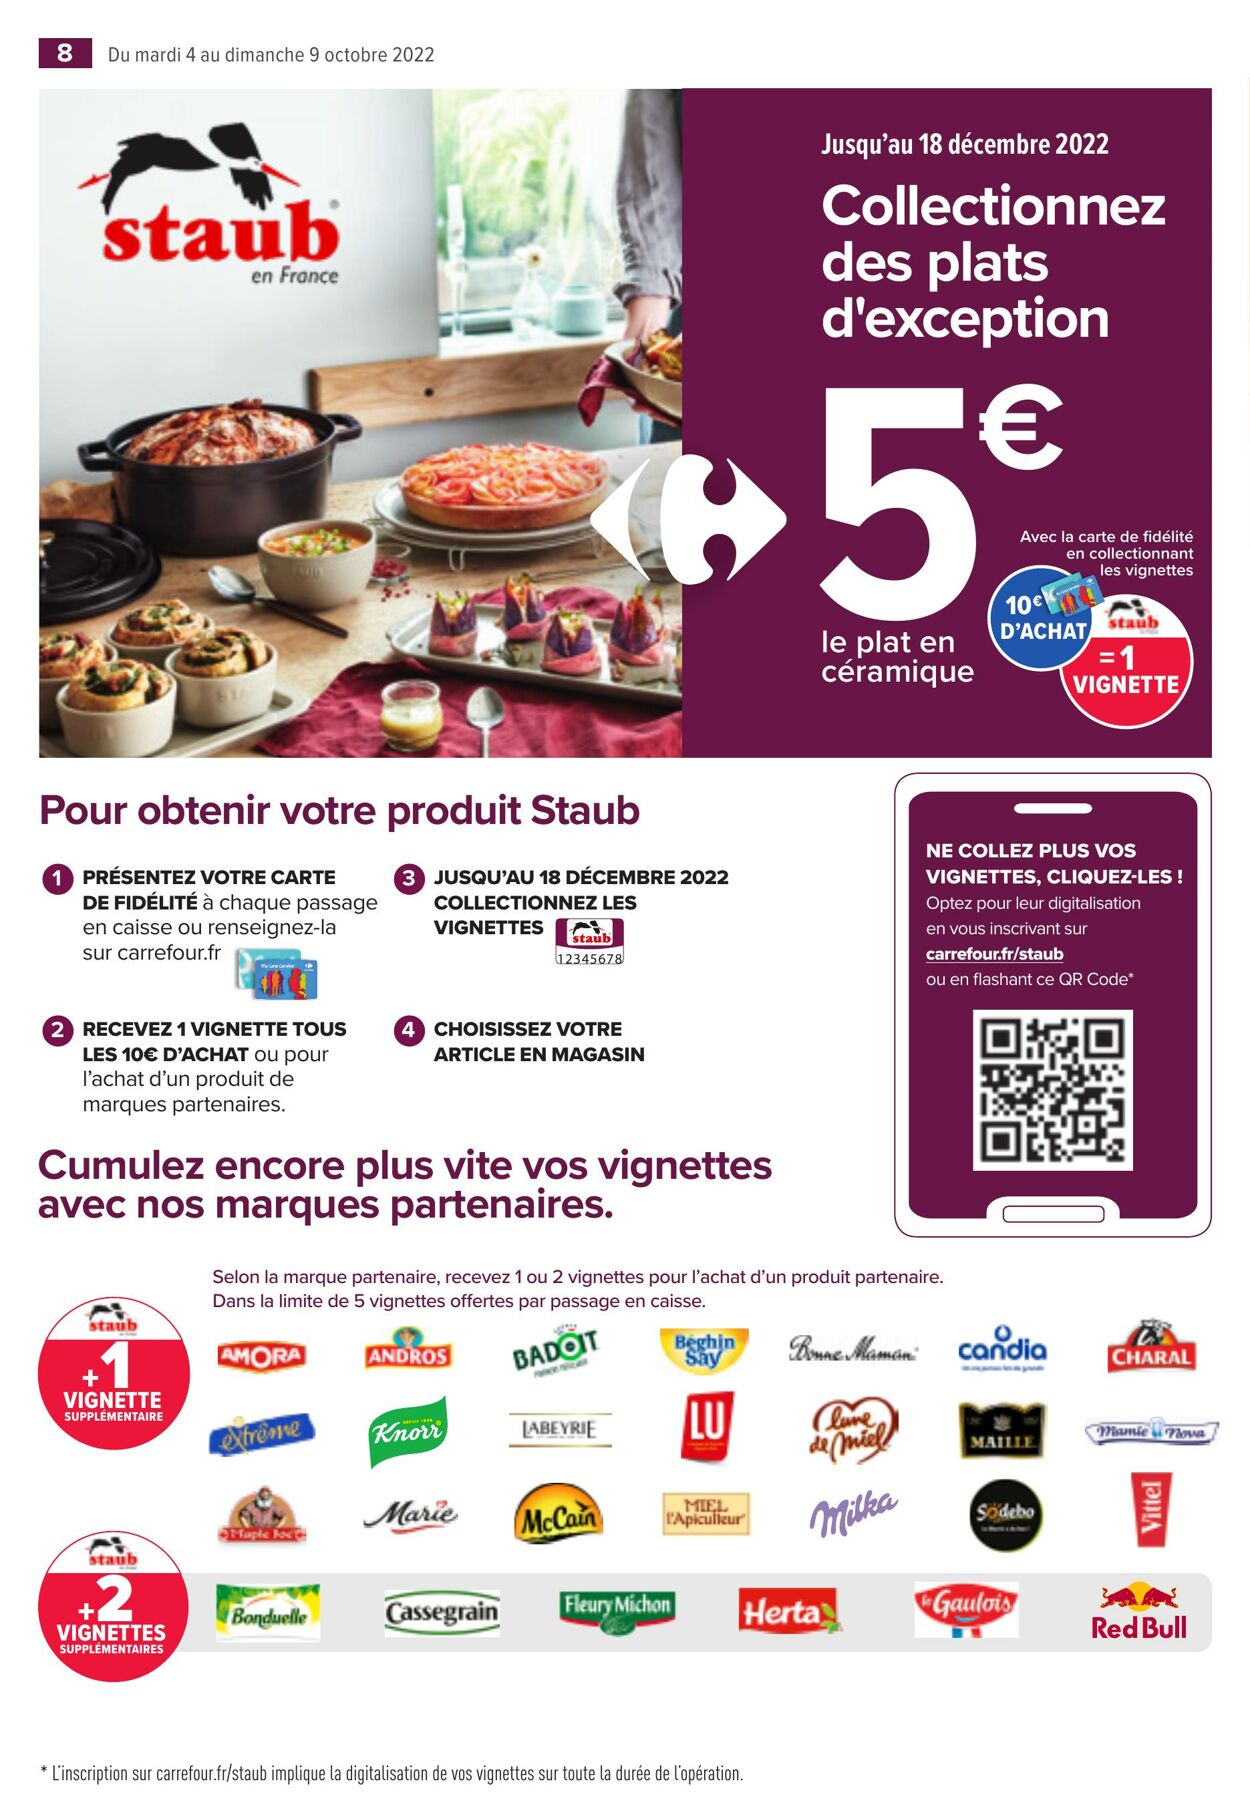 Catalogue Carrefour Market 04.10.2022 - 09.10.2022